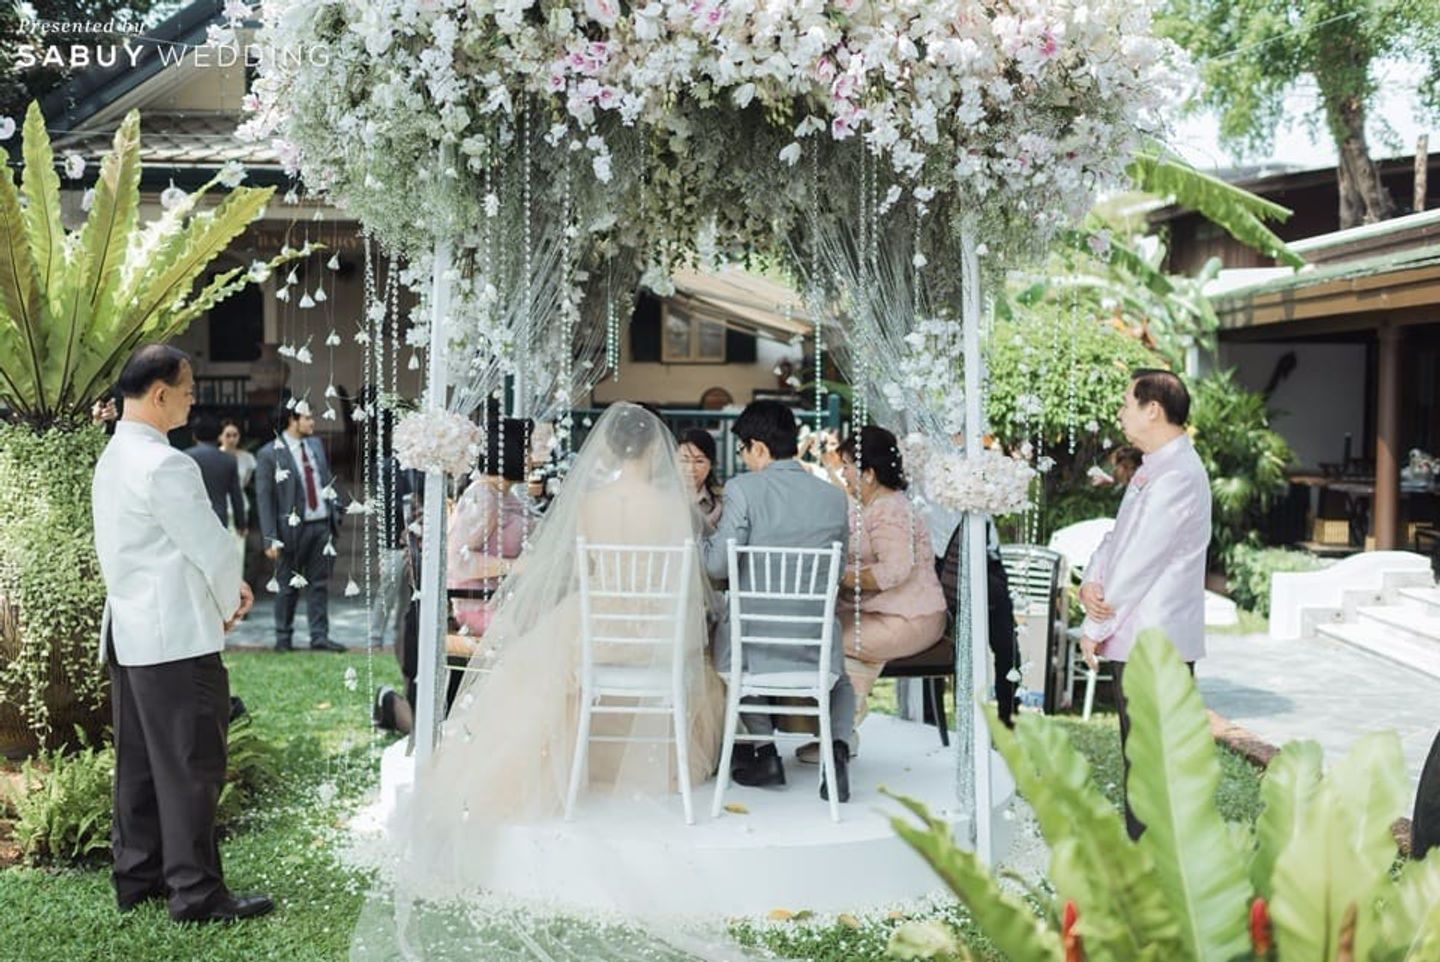 ซุ้มแต่งงาน,จัดดอกไม้งานแต่ง,สถานที่แต่งงาน,สถานที่จัดงานแต่งงาน,บ่าวสาว รีวิวงานแต่งหวานละมุนด้วยดอกไม้ ดั่งเทพนิยายในฝัน @Siam Kempinski Hotel Bangkok